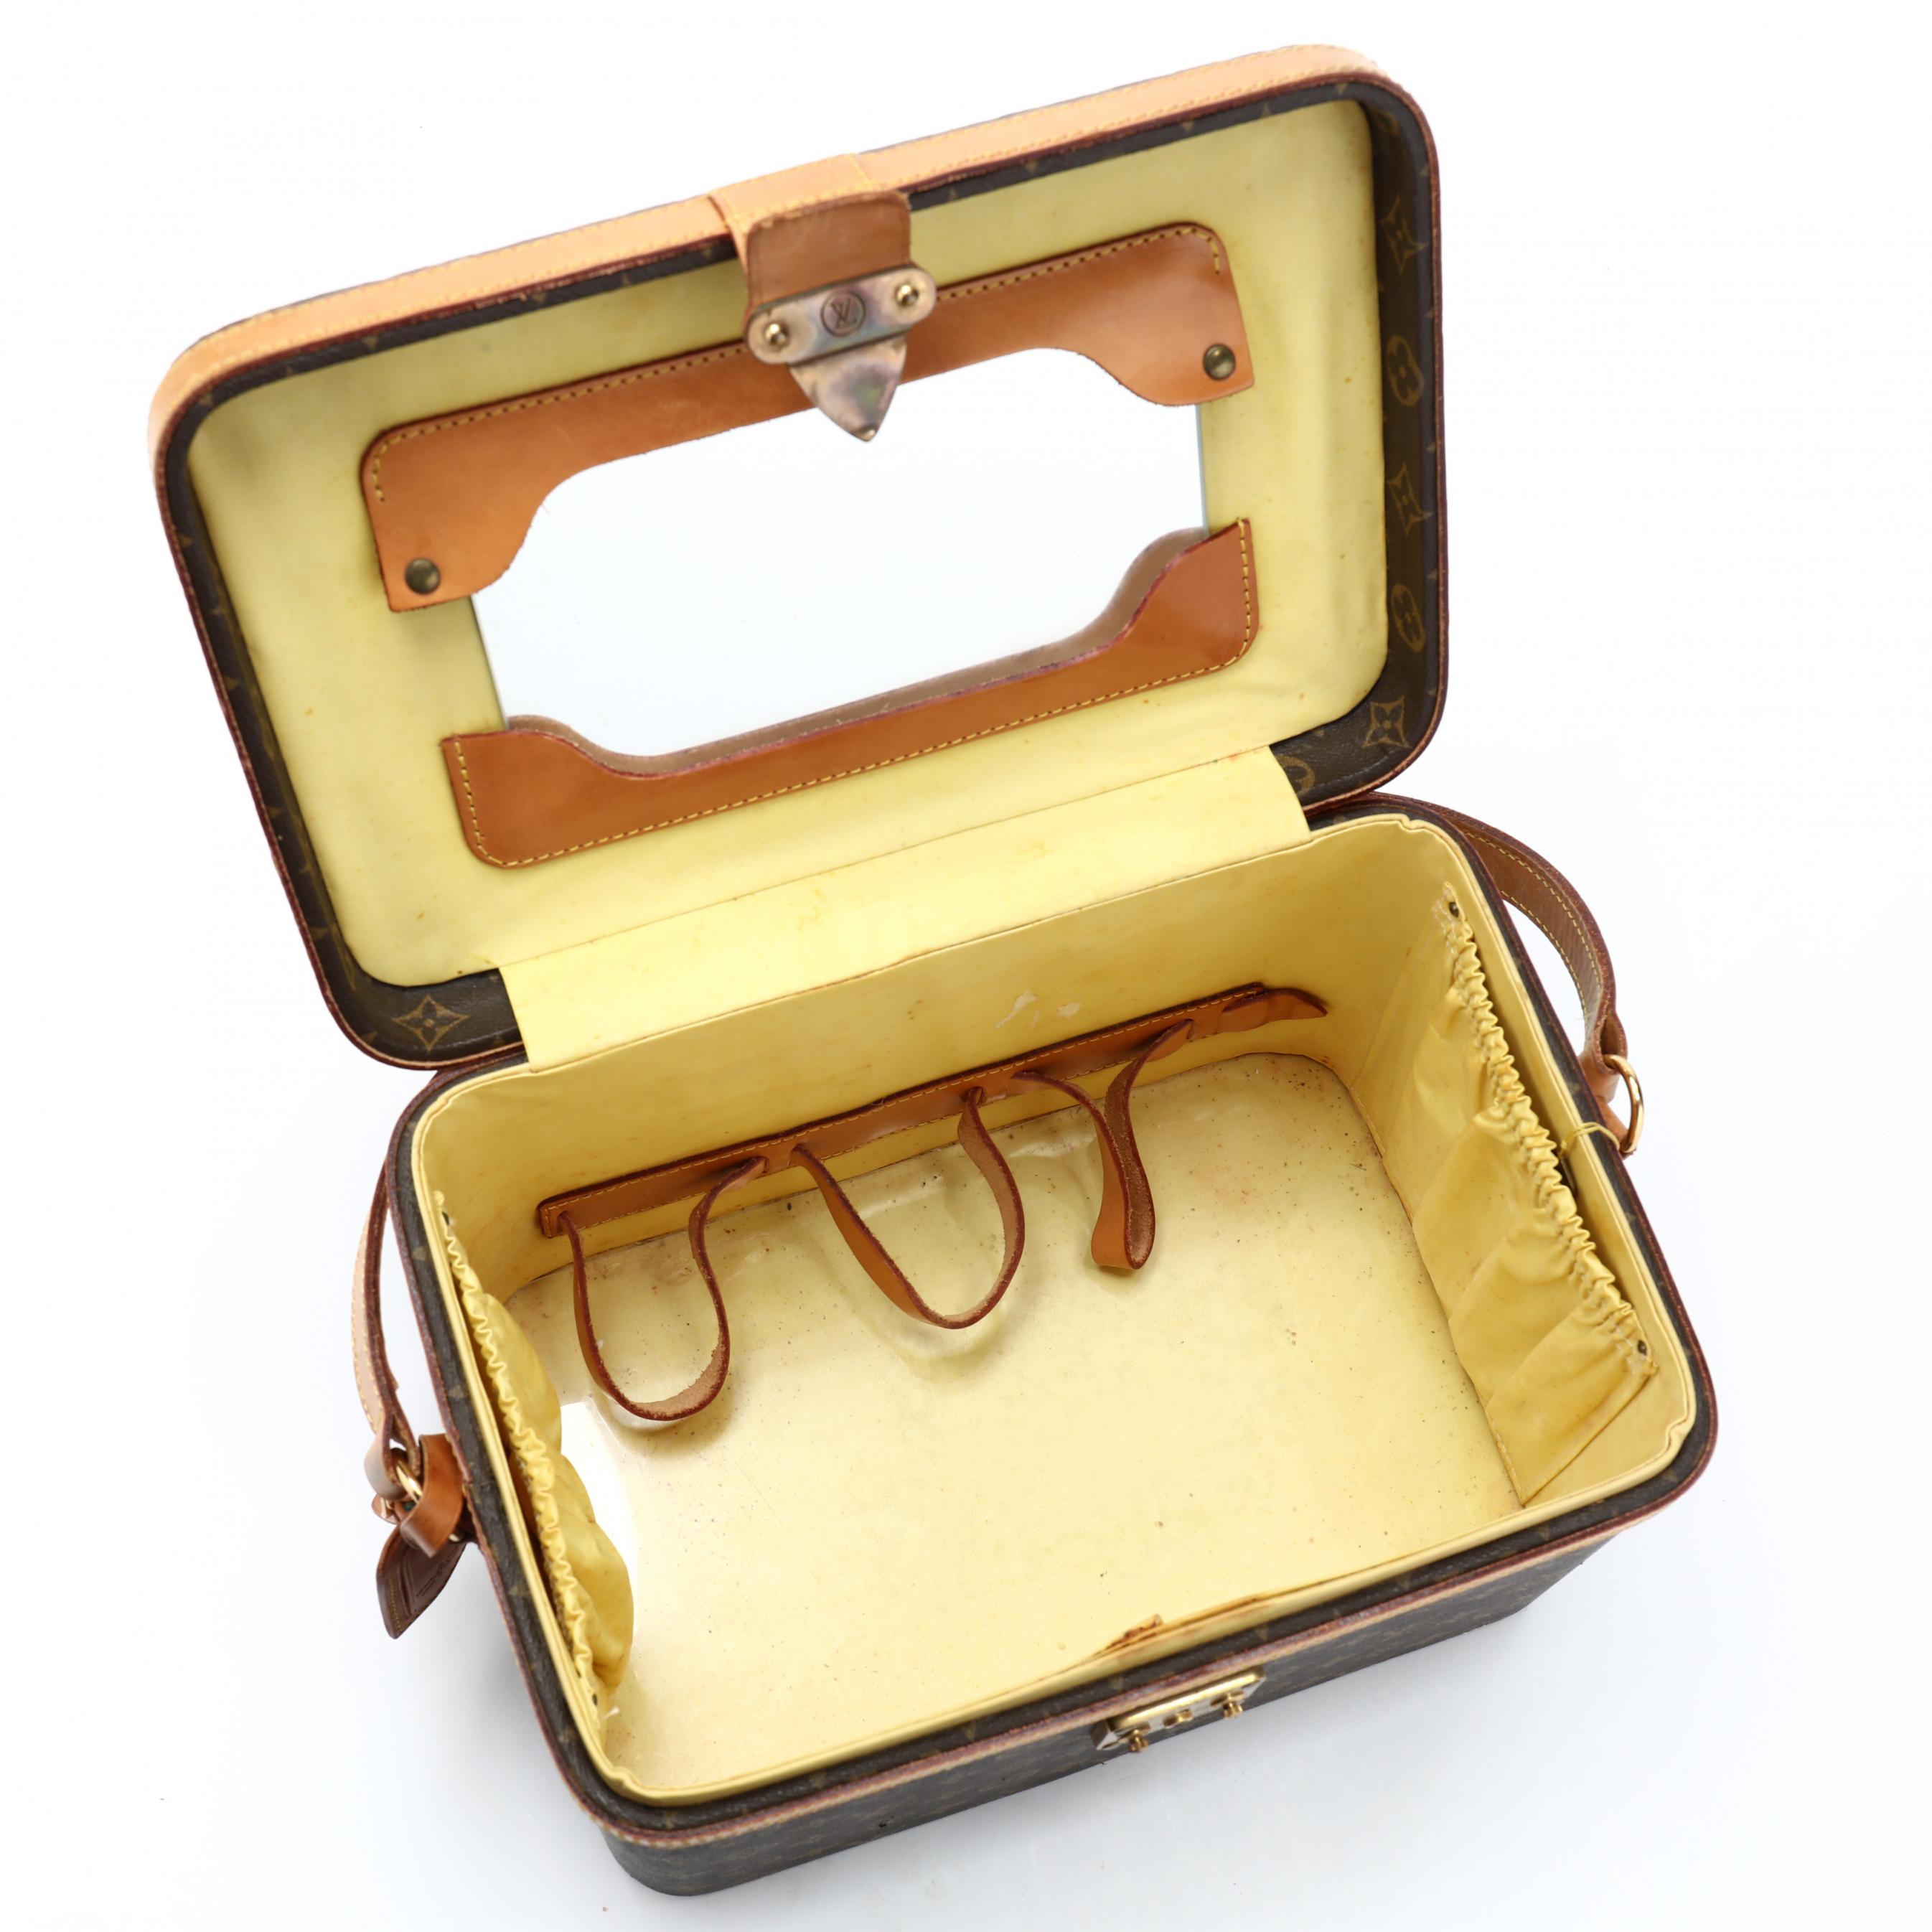 Sold at Auction: 1980'S LOUIS VUITTON TRAIN CASE VANITY MAKEUP BOX